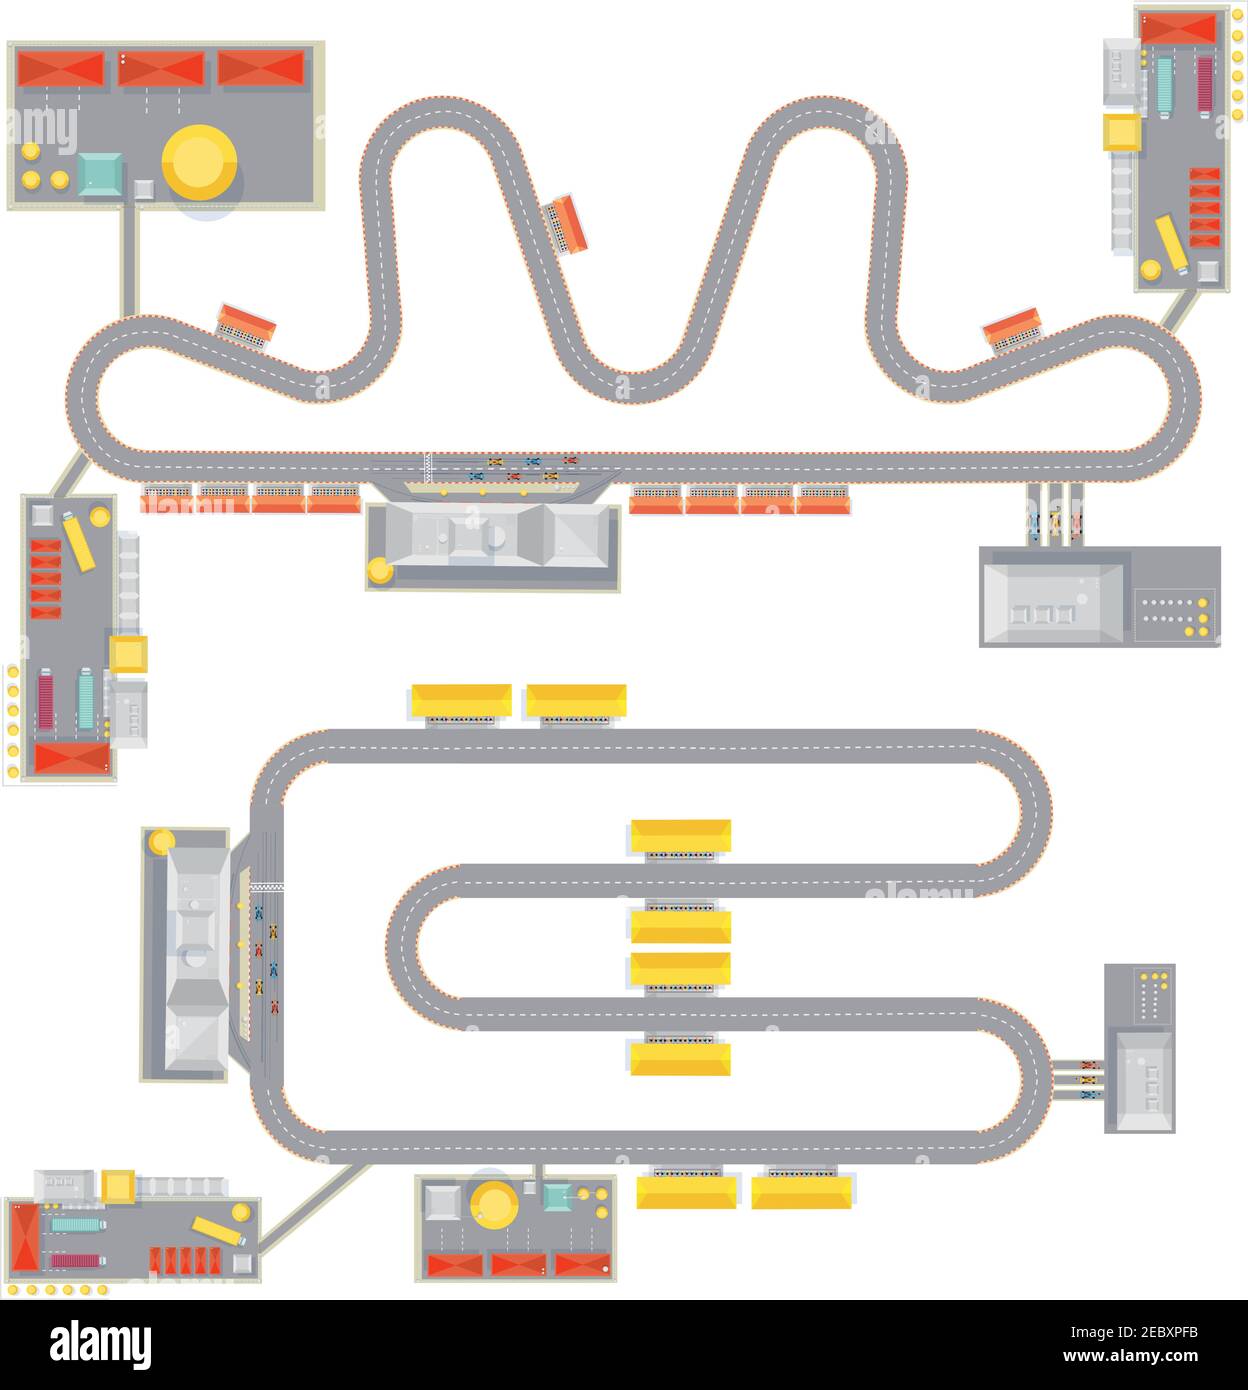 Zwei isolierte komplette Rennstrecken-Musterbilder mit Draufsicht Natürlich Garage Gebäude und Tribünen Vektor-Illustration Stock Vektor